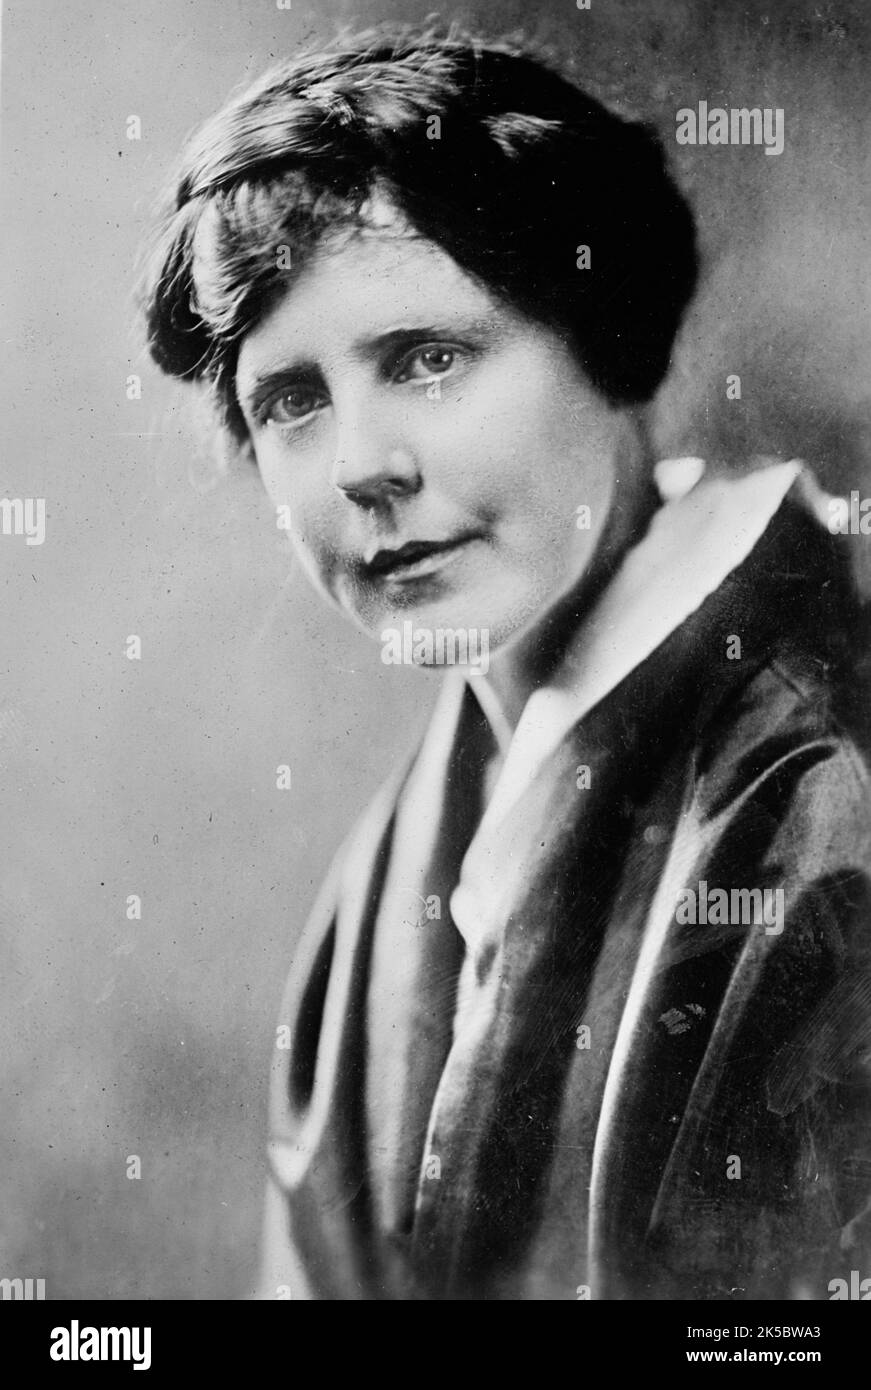 Burns, Miss Lucy, von C.U.W.S., 1917. Amerikanische Frauenrechtlerin und Frauenrechtlerin. Lucy Burns leitete die Congressional Union for Woman Suffrage (CUWS), war in der National American Women Suffrage Association aktiv und half bei der Bildung der National Woman's Party. Stockfoto